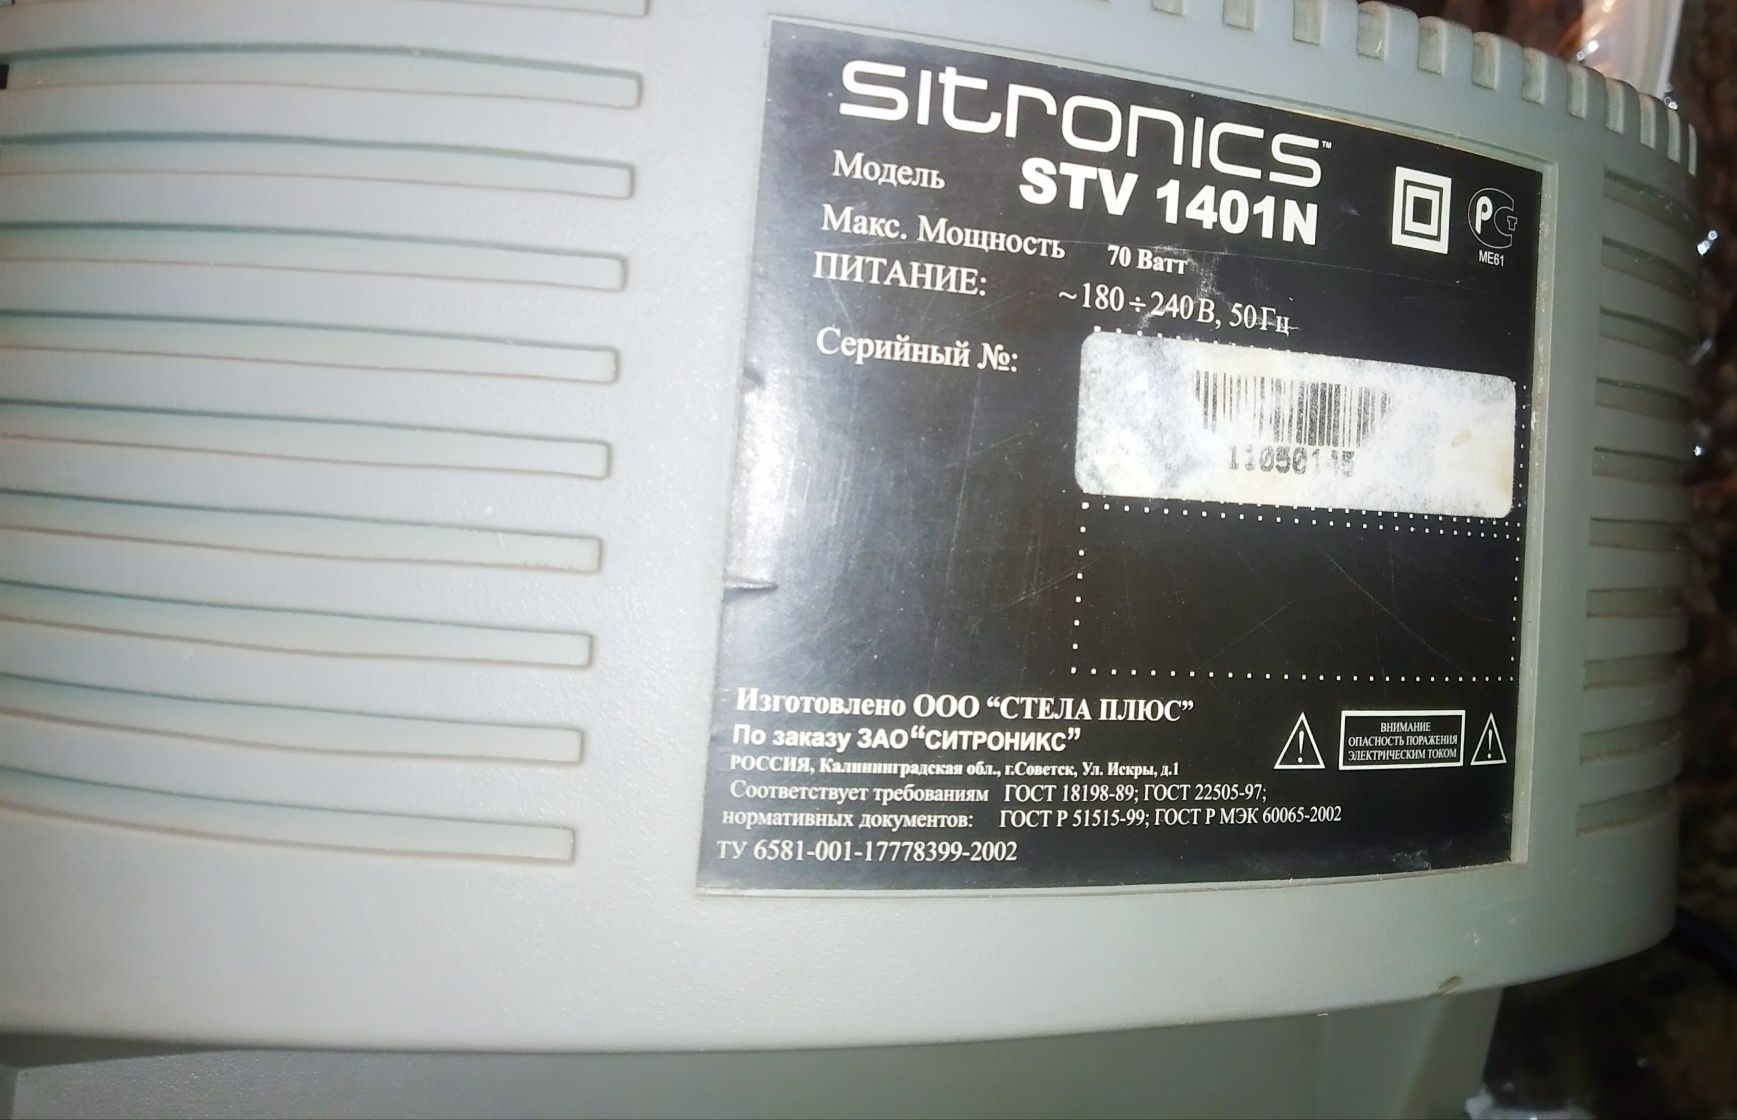 На детали телевизор Sitronics STV 1401n с пультом управления.